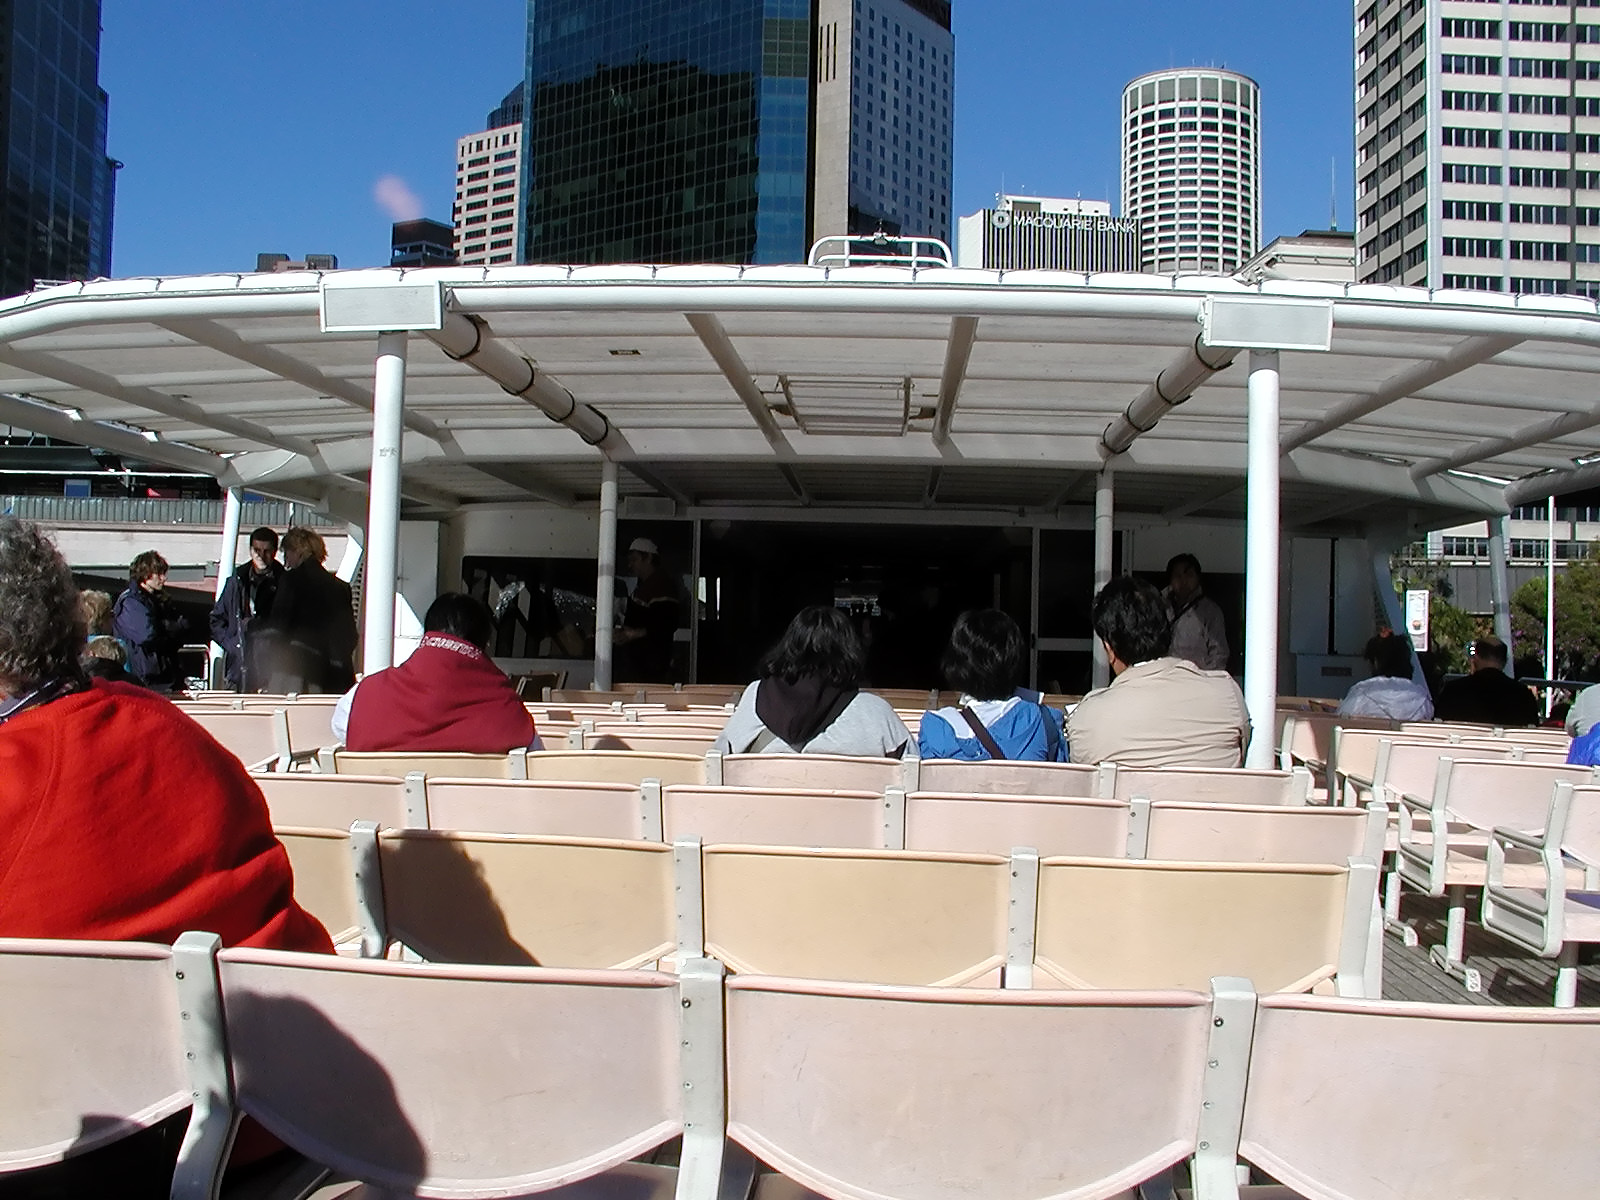 17-Jun-2001 09:51 - Sydney - Captain Cook tour boat